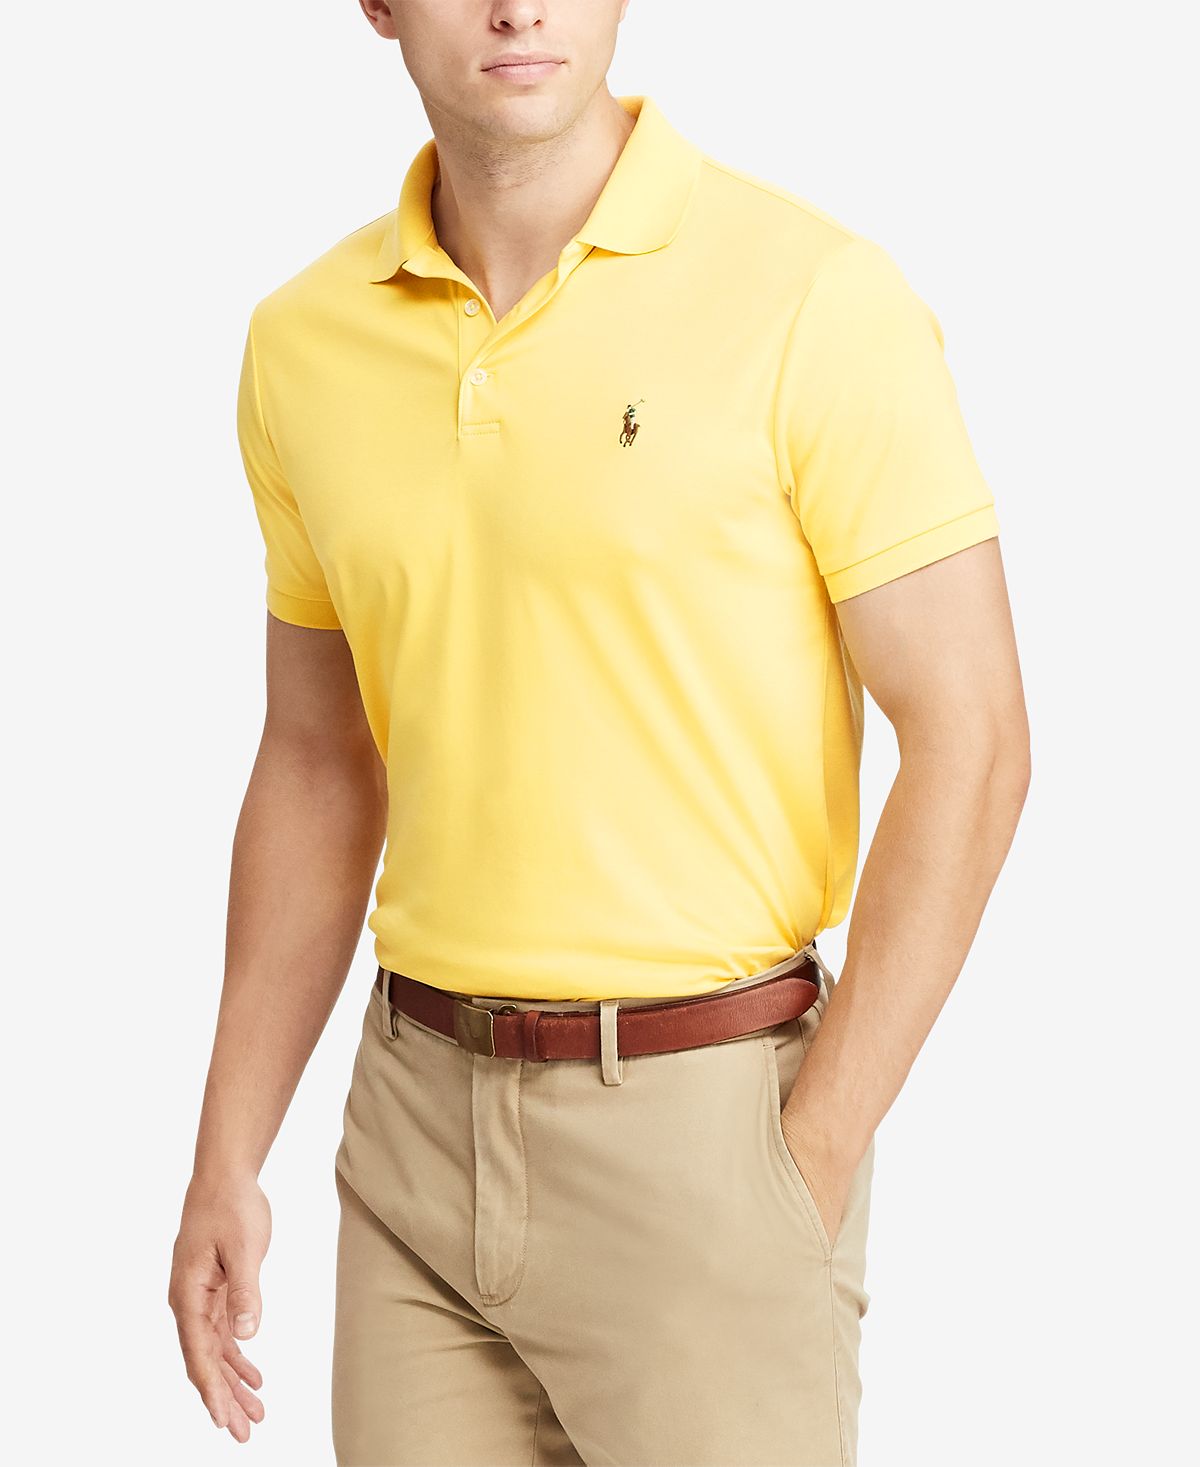 Поло из хлопка. Polo RL men. Ralph Lauren рубашка желтая. Man's Classic Polo Shirt. Поло мужское черное с желтым.